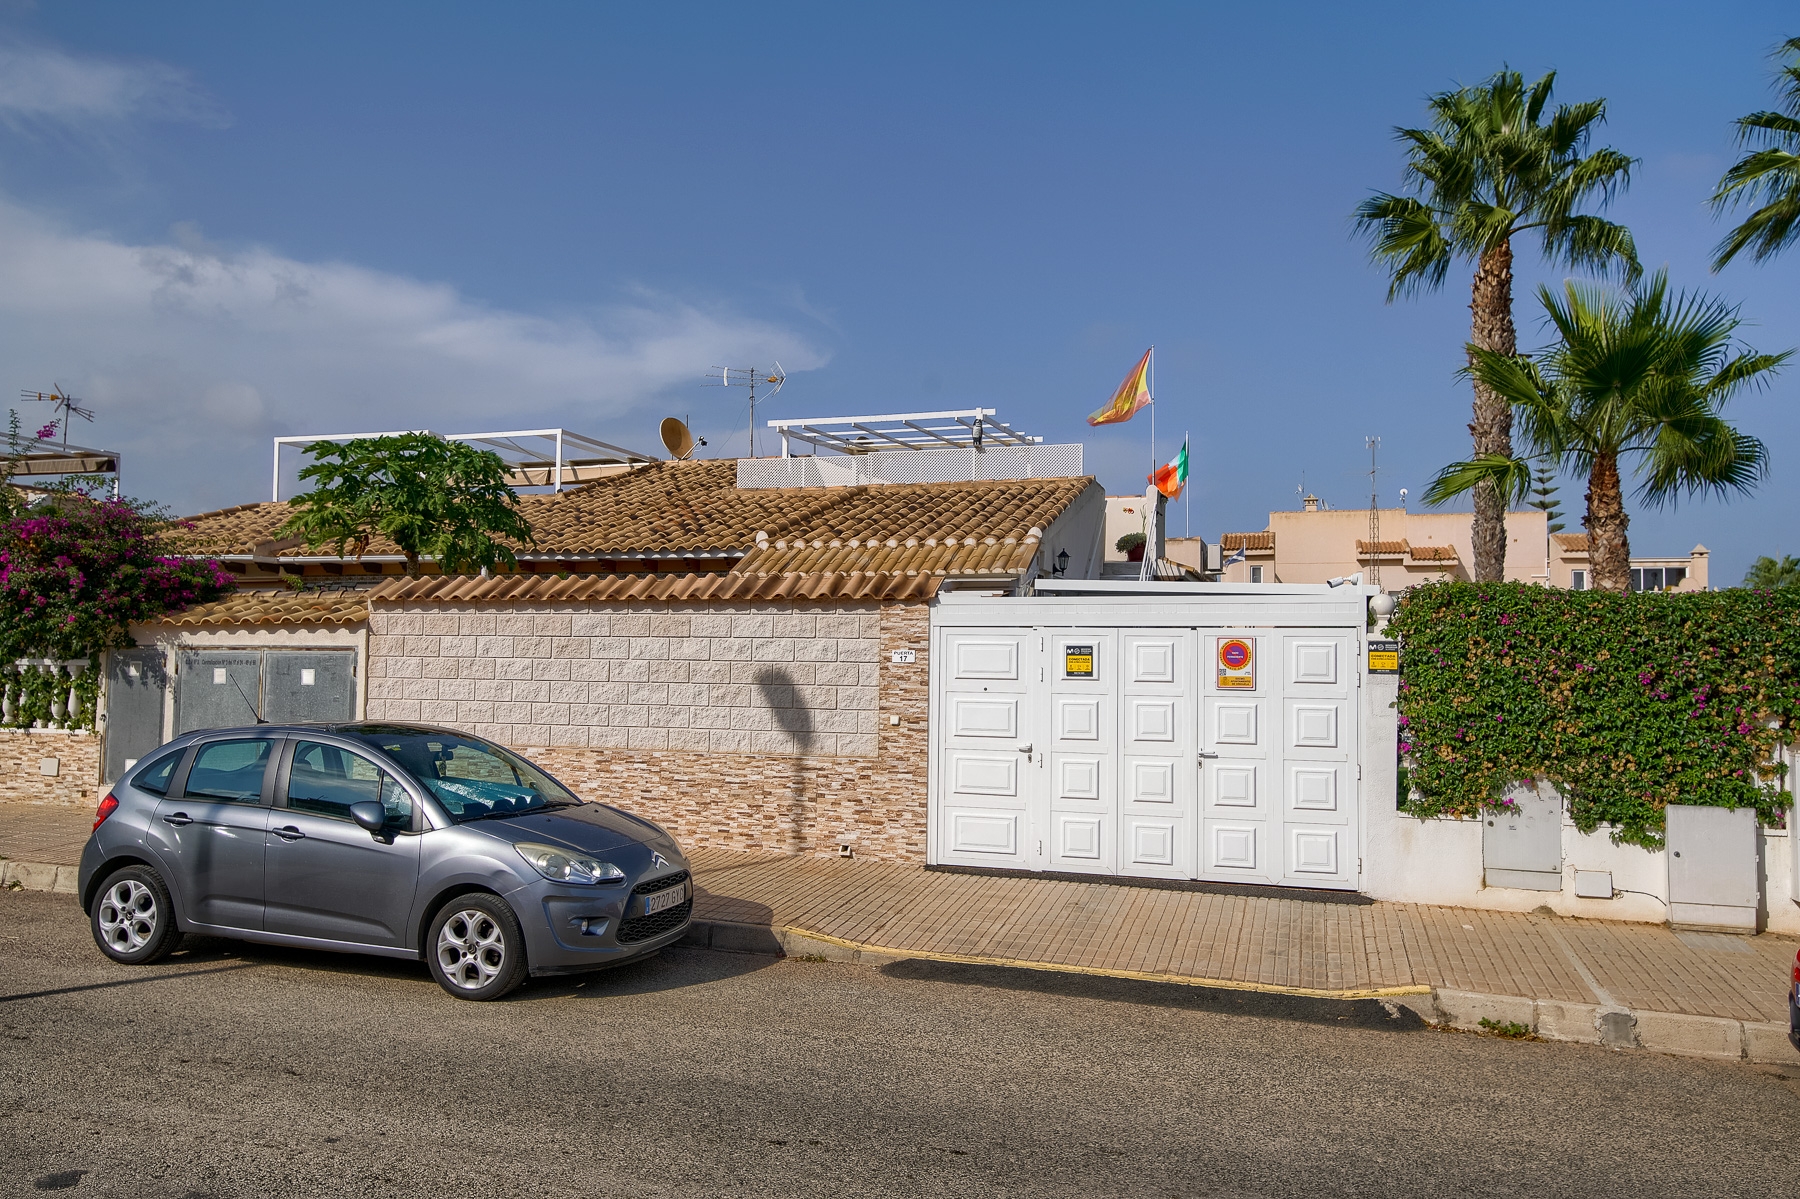 Bungalow quadruple de 2 chambres avec solarium, parking hors route près du boulevard La Zenia